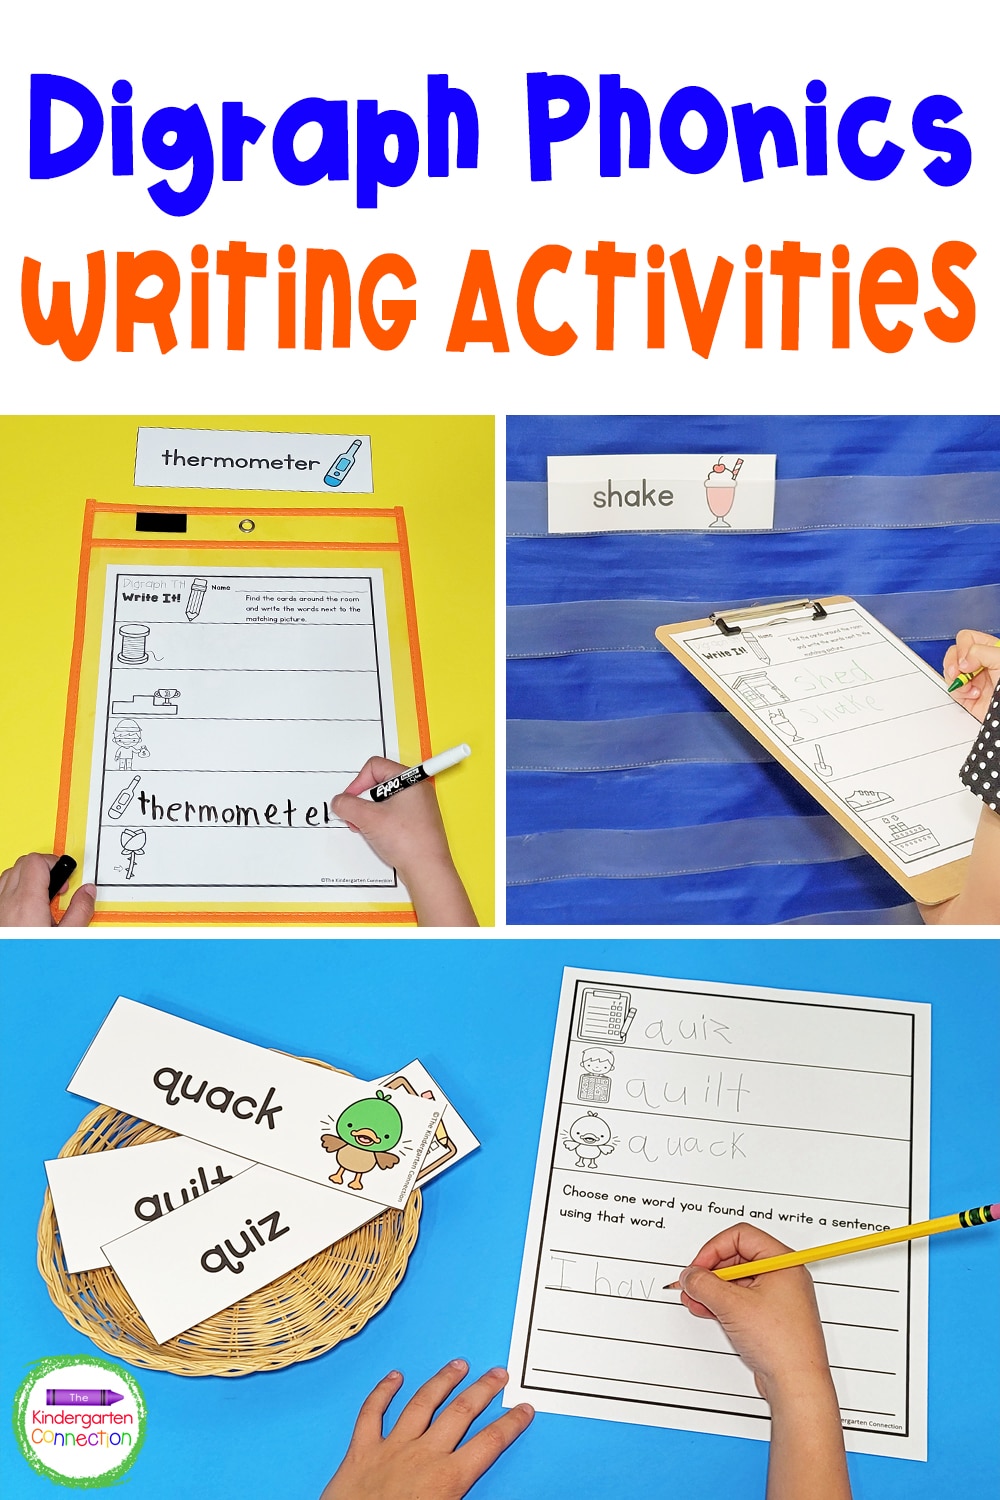 Digraph Phonics Writing Activities for Kindergarten